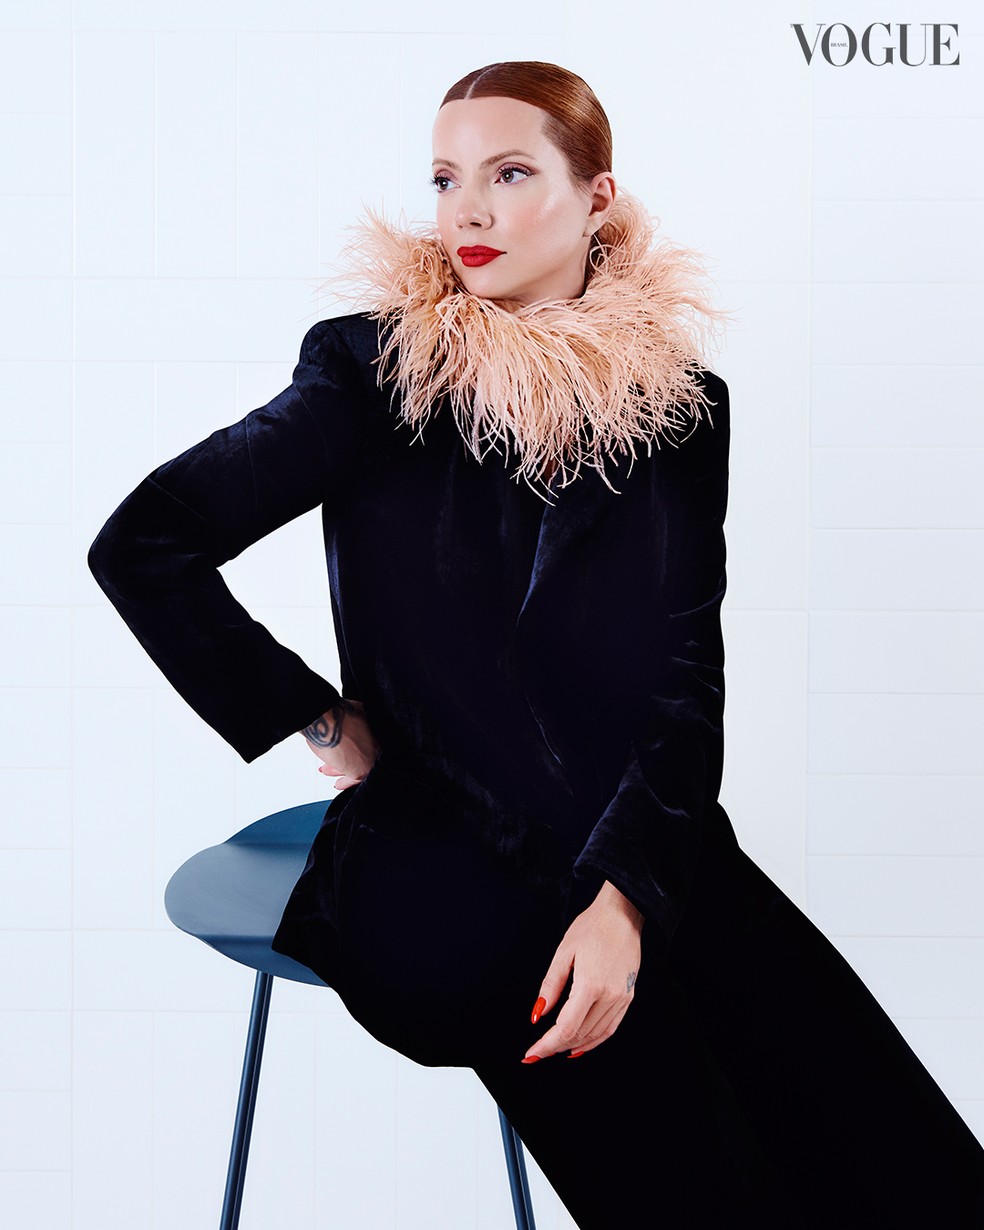 Exclusivo: Julia Petit trará de volta a Contém 1g, marca de maquiagem ícone dos anos 2000 | Beleza | Vogue